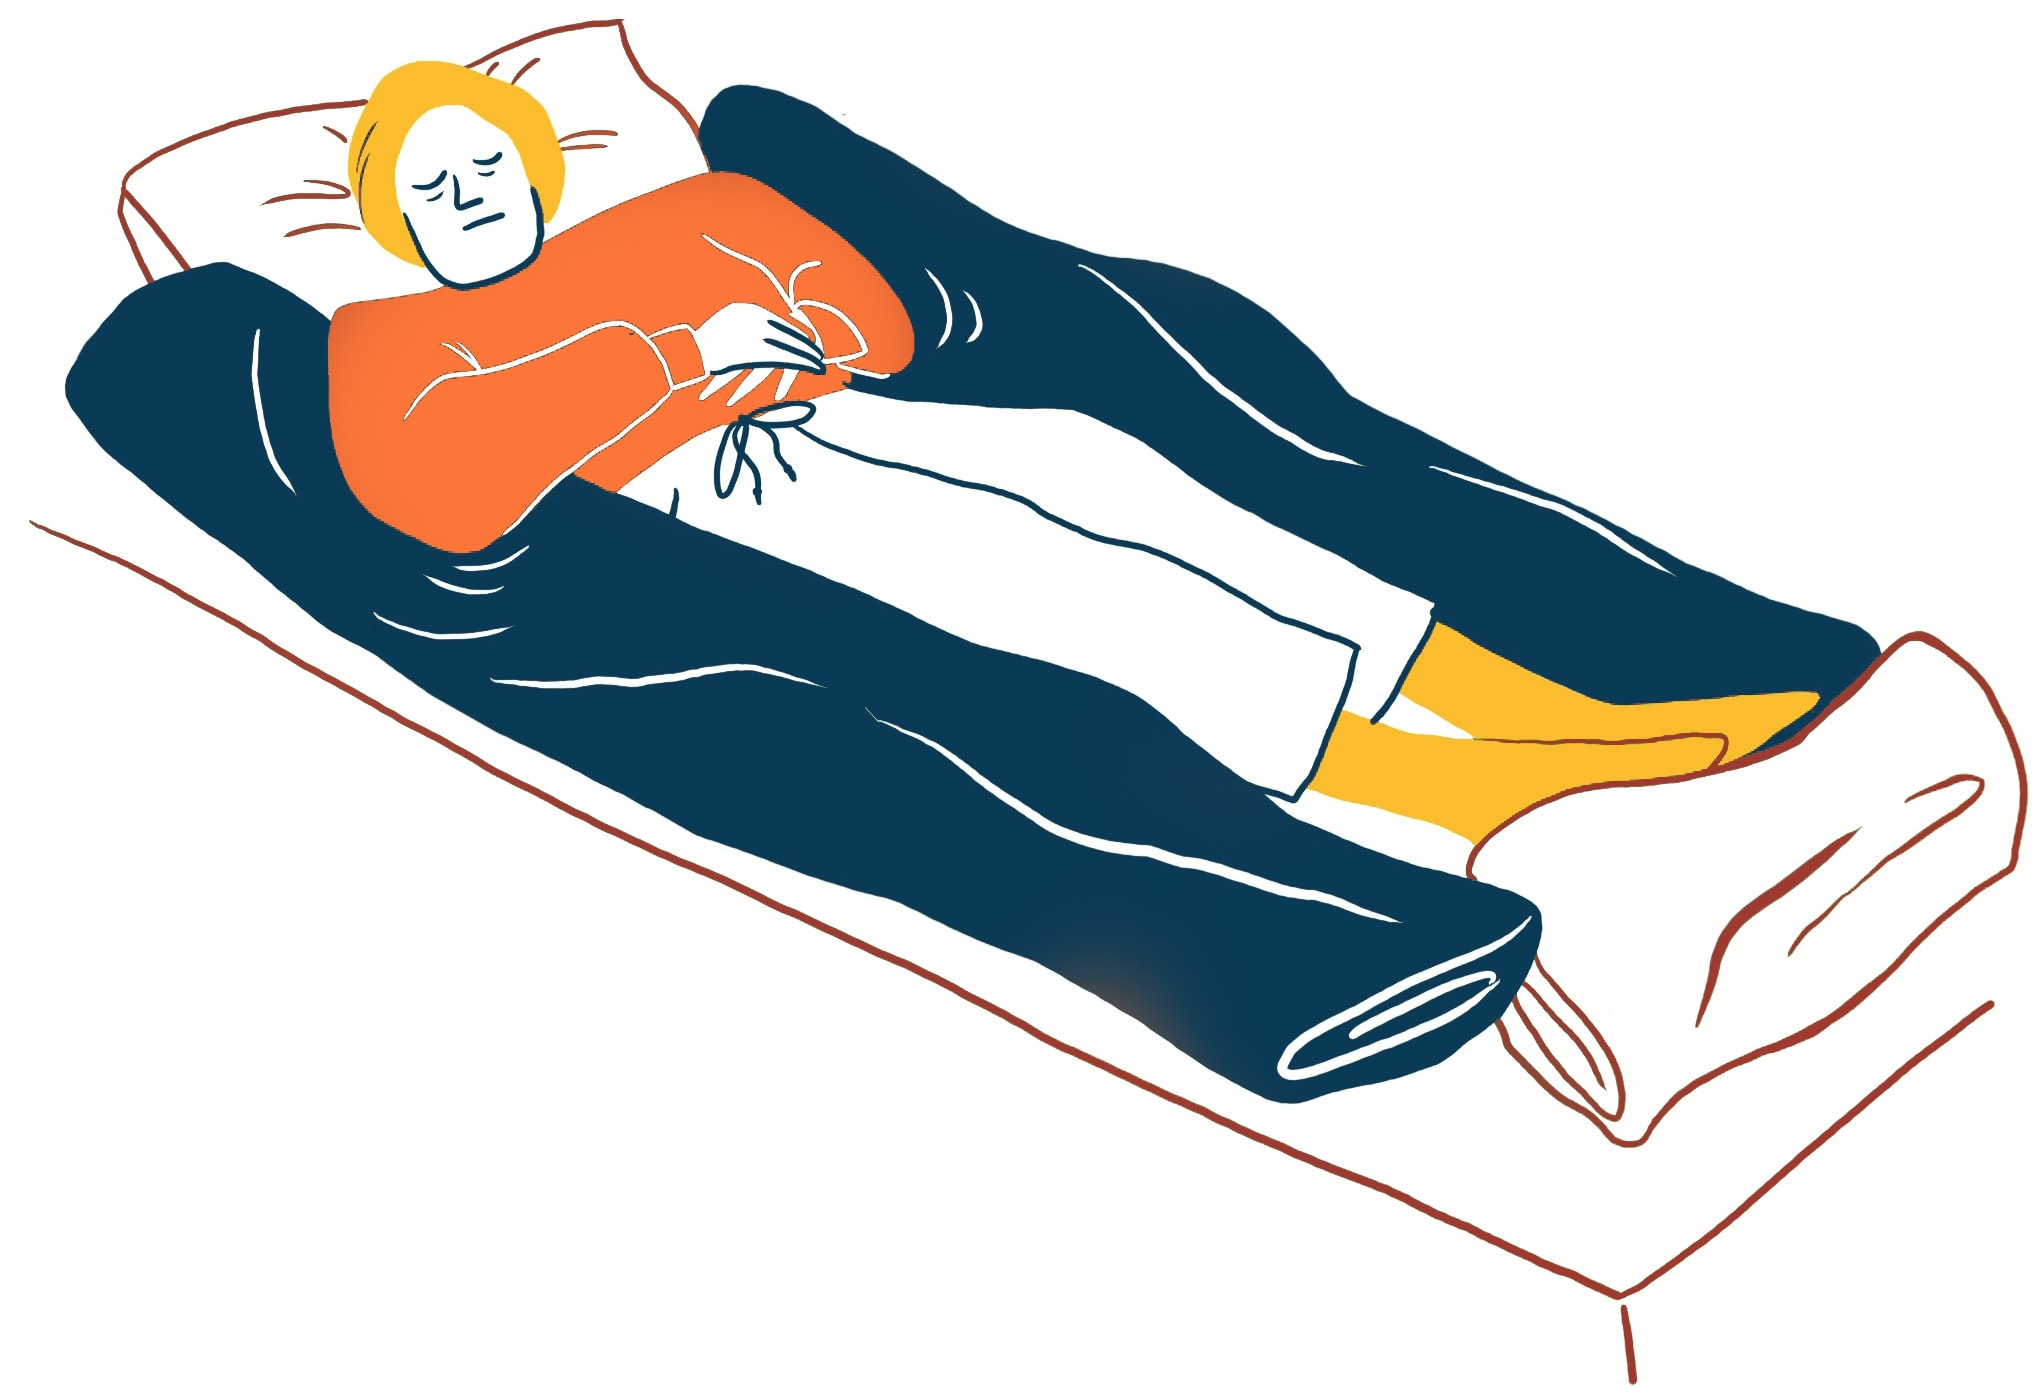 Nestlagerung: Abbildung einer Person, die auf einem Bett links, rechts und unten mit Decken 'gestützt' wird. Die Person hat einen ruhigen Gesichtsausdruck und trägt ein orangefarbenes Hemd und weiße Hosen. Ihre Hände sind über ihrem Oberkörper gefaltet und ihre Augen sind geschlossen.